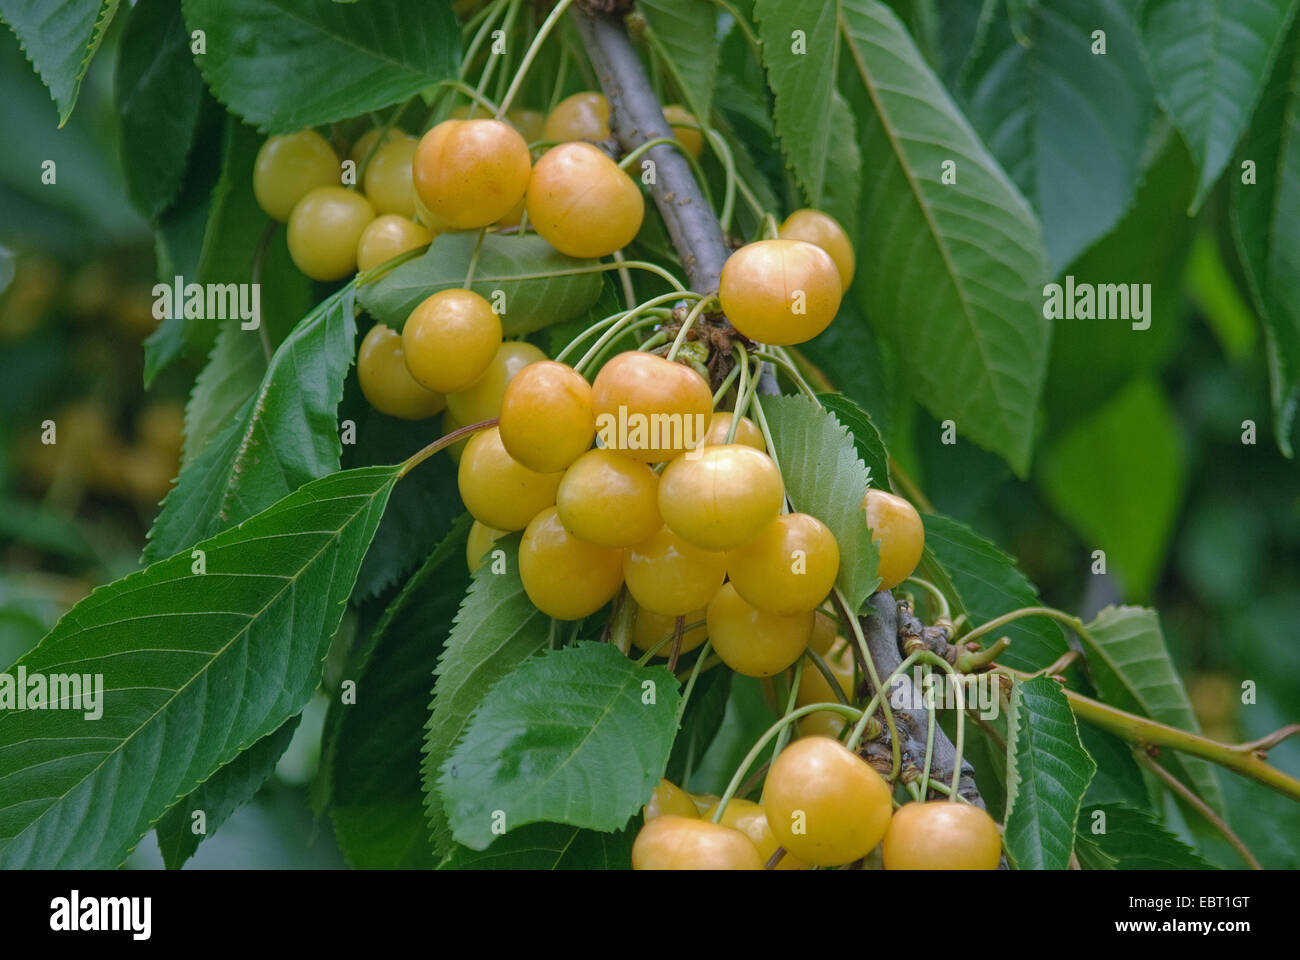 Cherry tree, Sweet cherry (Prunus avium 'Doenissens Gelbe Knorpelkirsche', Prunus avium Doenissens Gelbe Knorpelkirsche), cultivar Doenissens Gelbe Knorpelkirsche Stock Photo